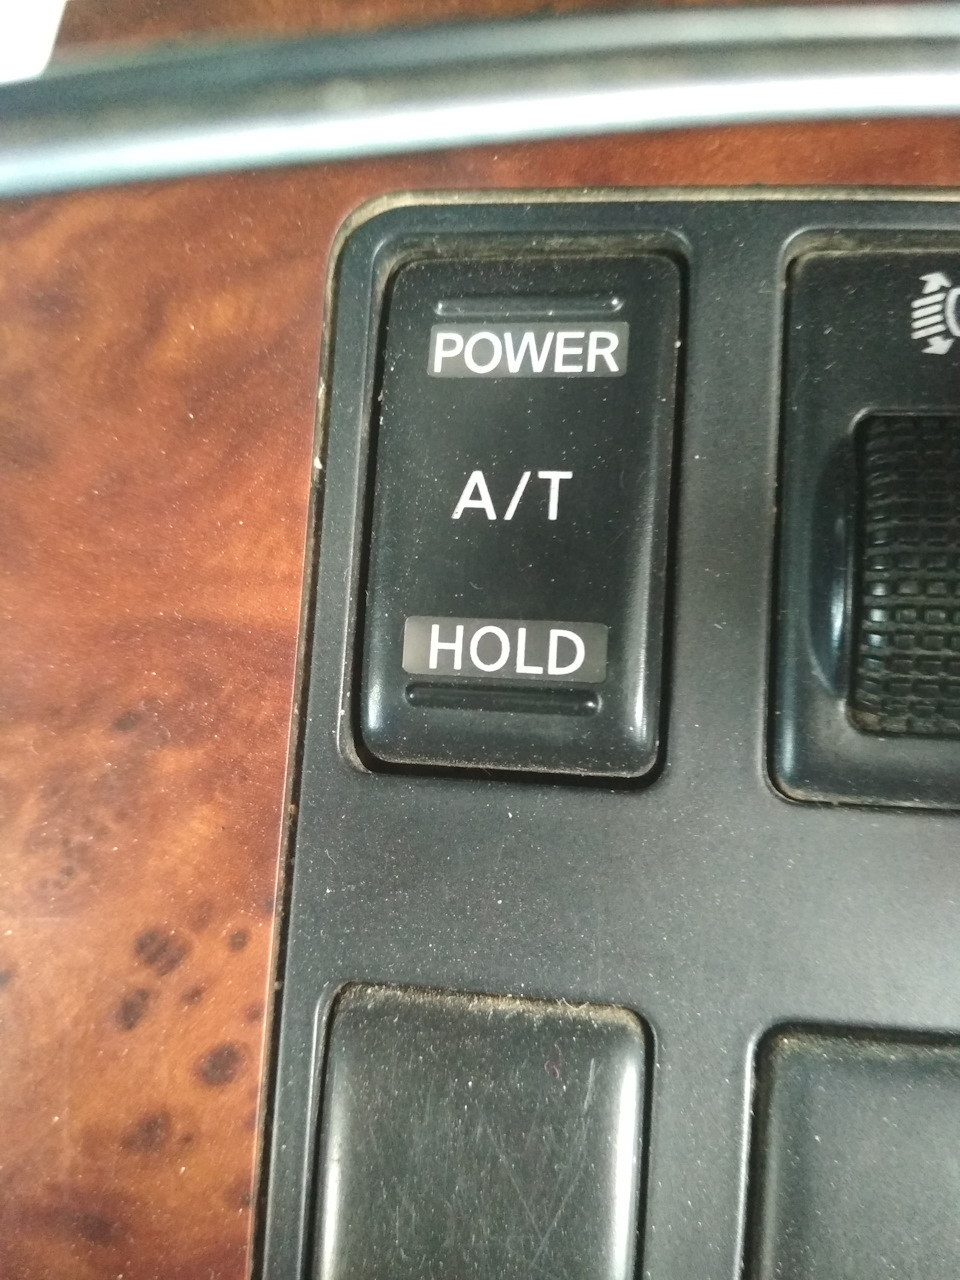 Кнопка hold на акпп. стояночный тормоз с функцией auto hold- что это и как работает